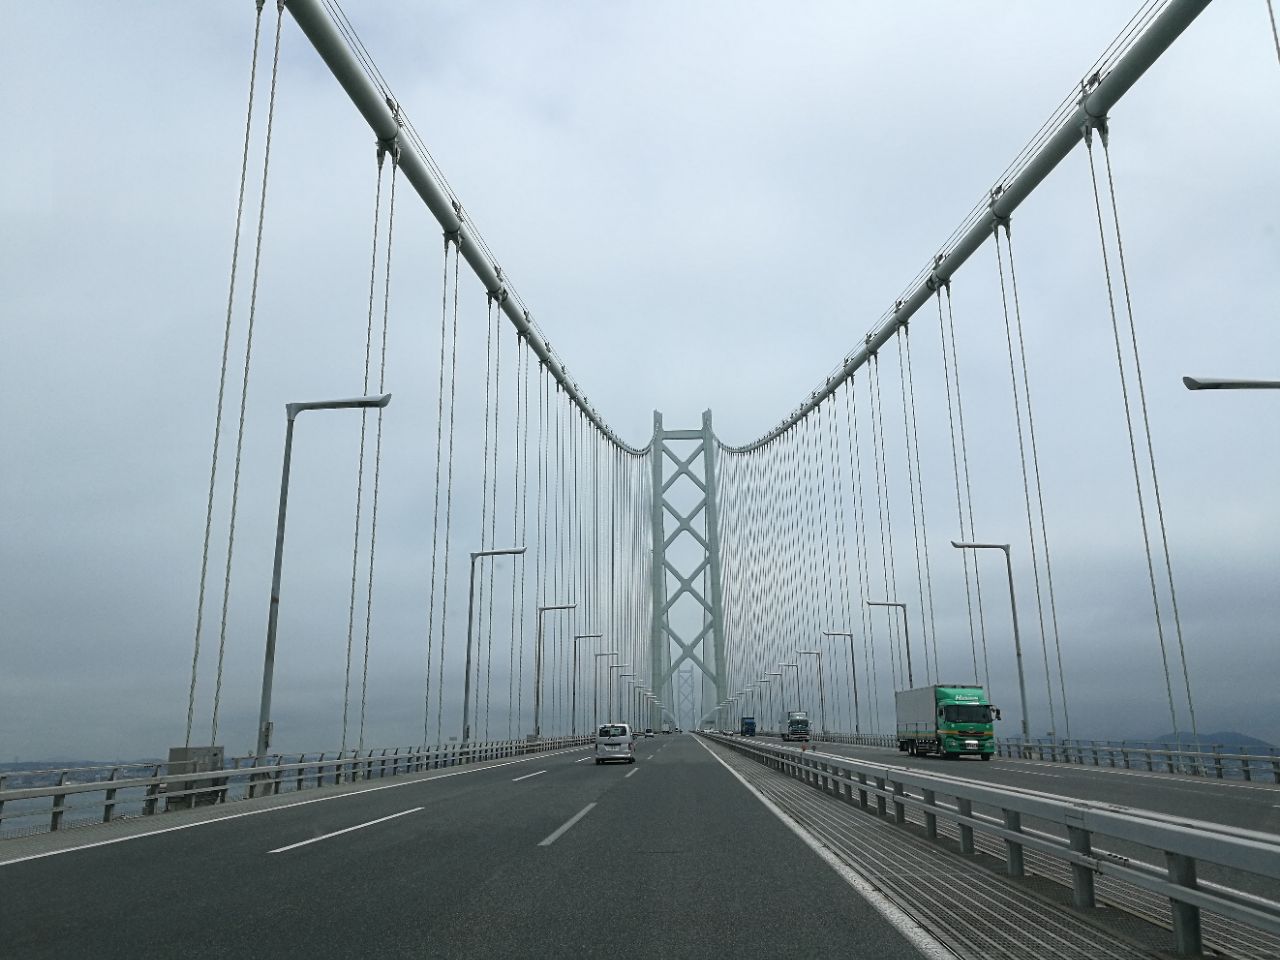 【携程攻略】神户明石海峡大桥景点,坐船路过...在桥下穿过才能真正感觉到无桥墩支撑部分的长度，很震撼…